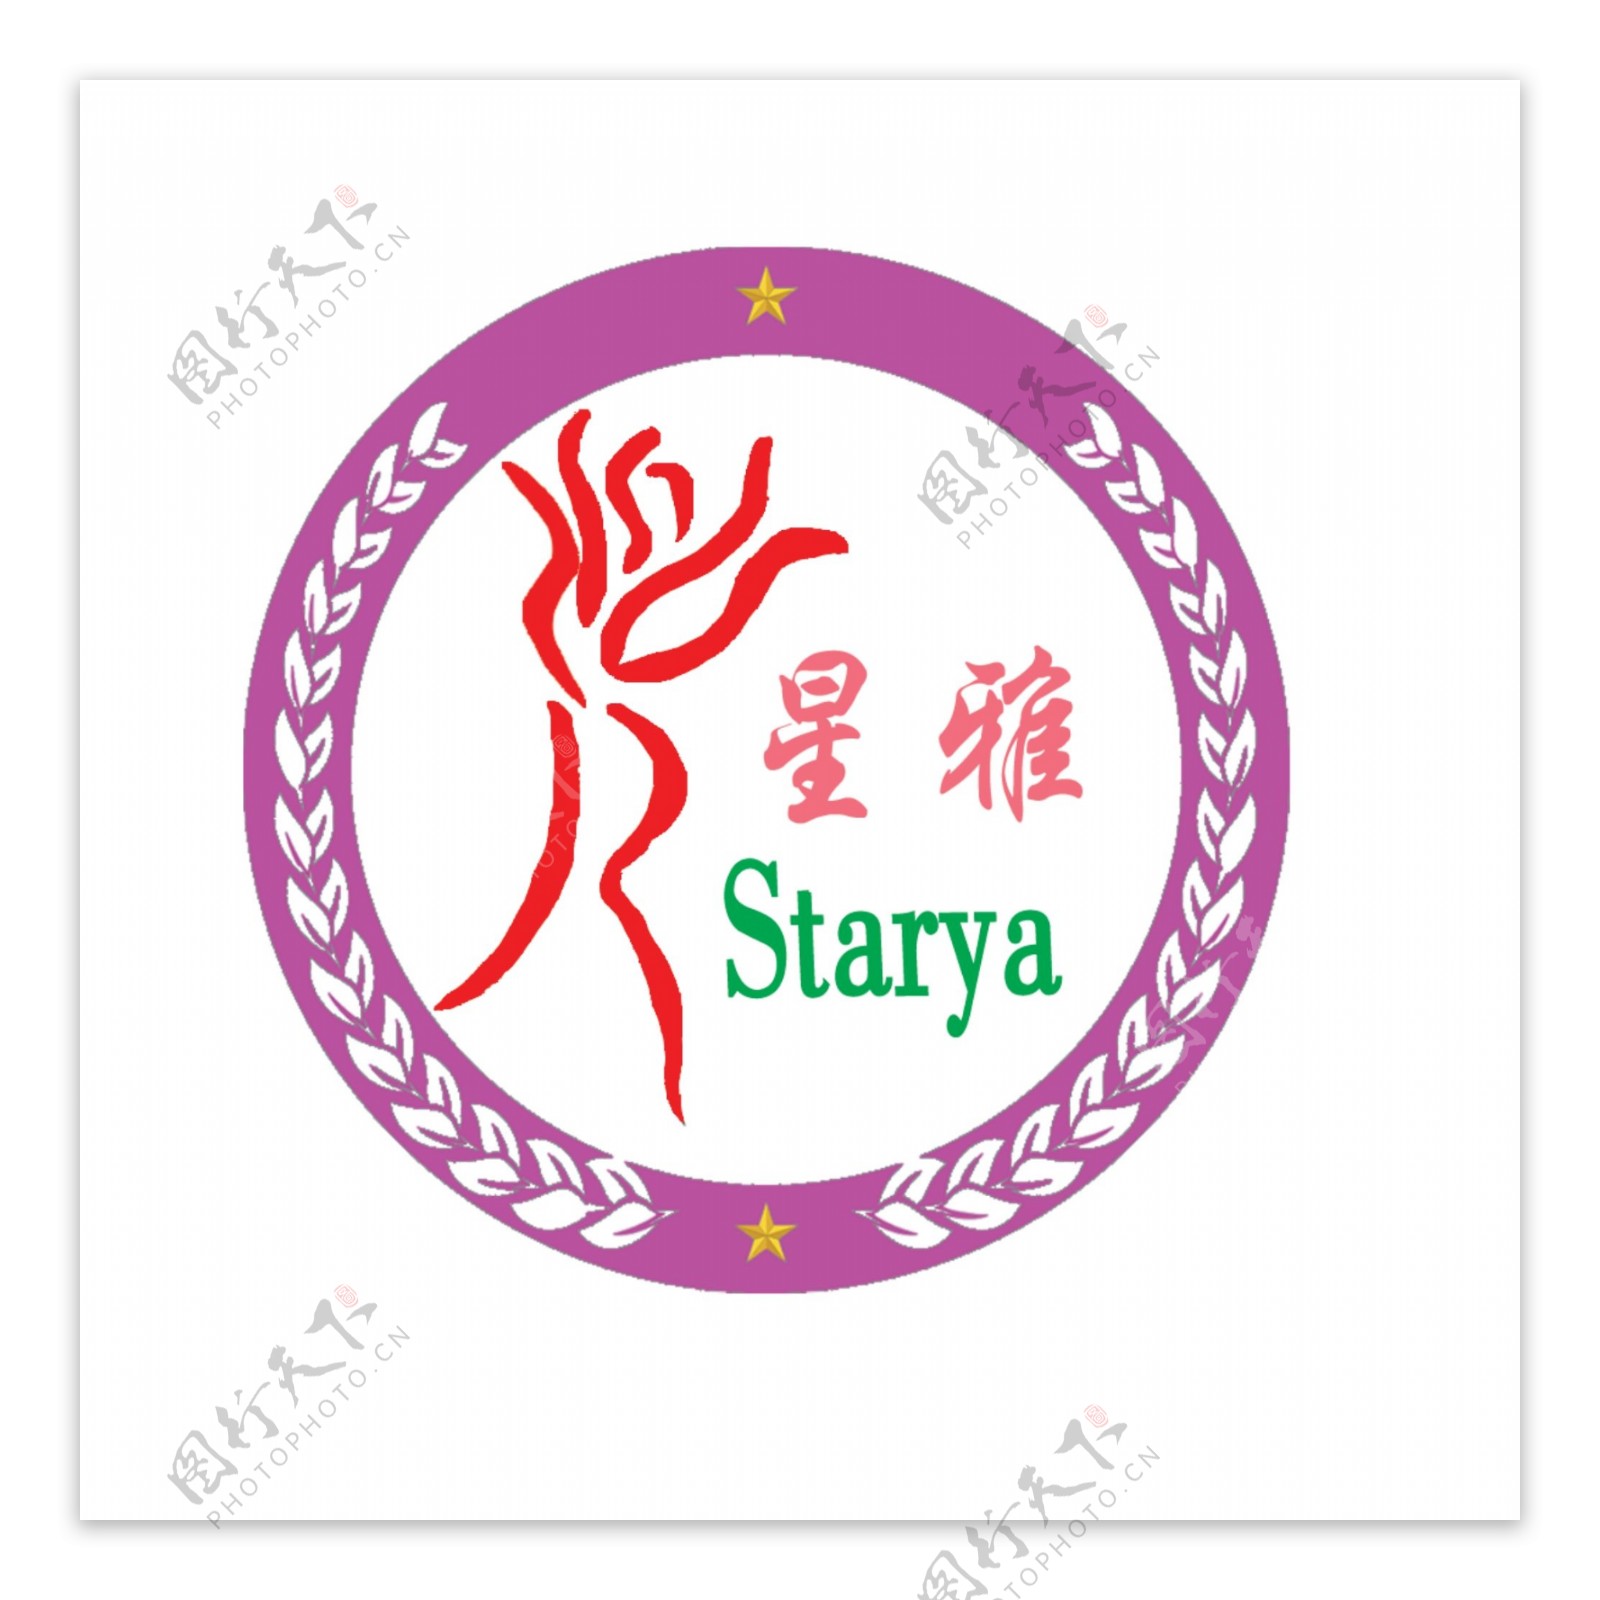 星雅艺术学校logo